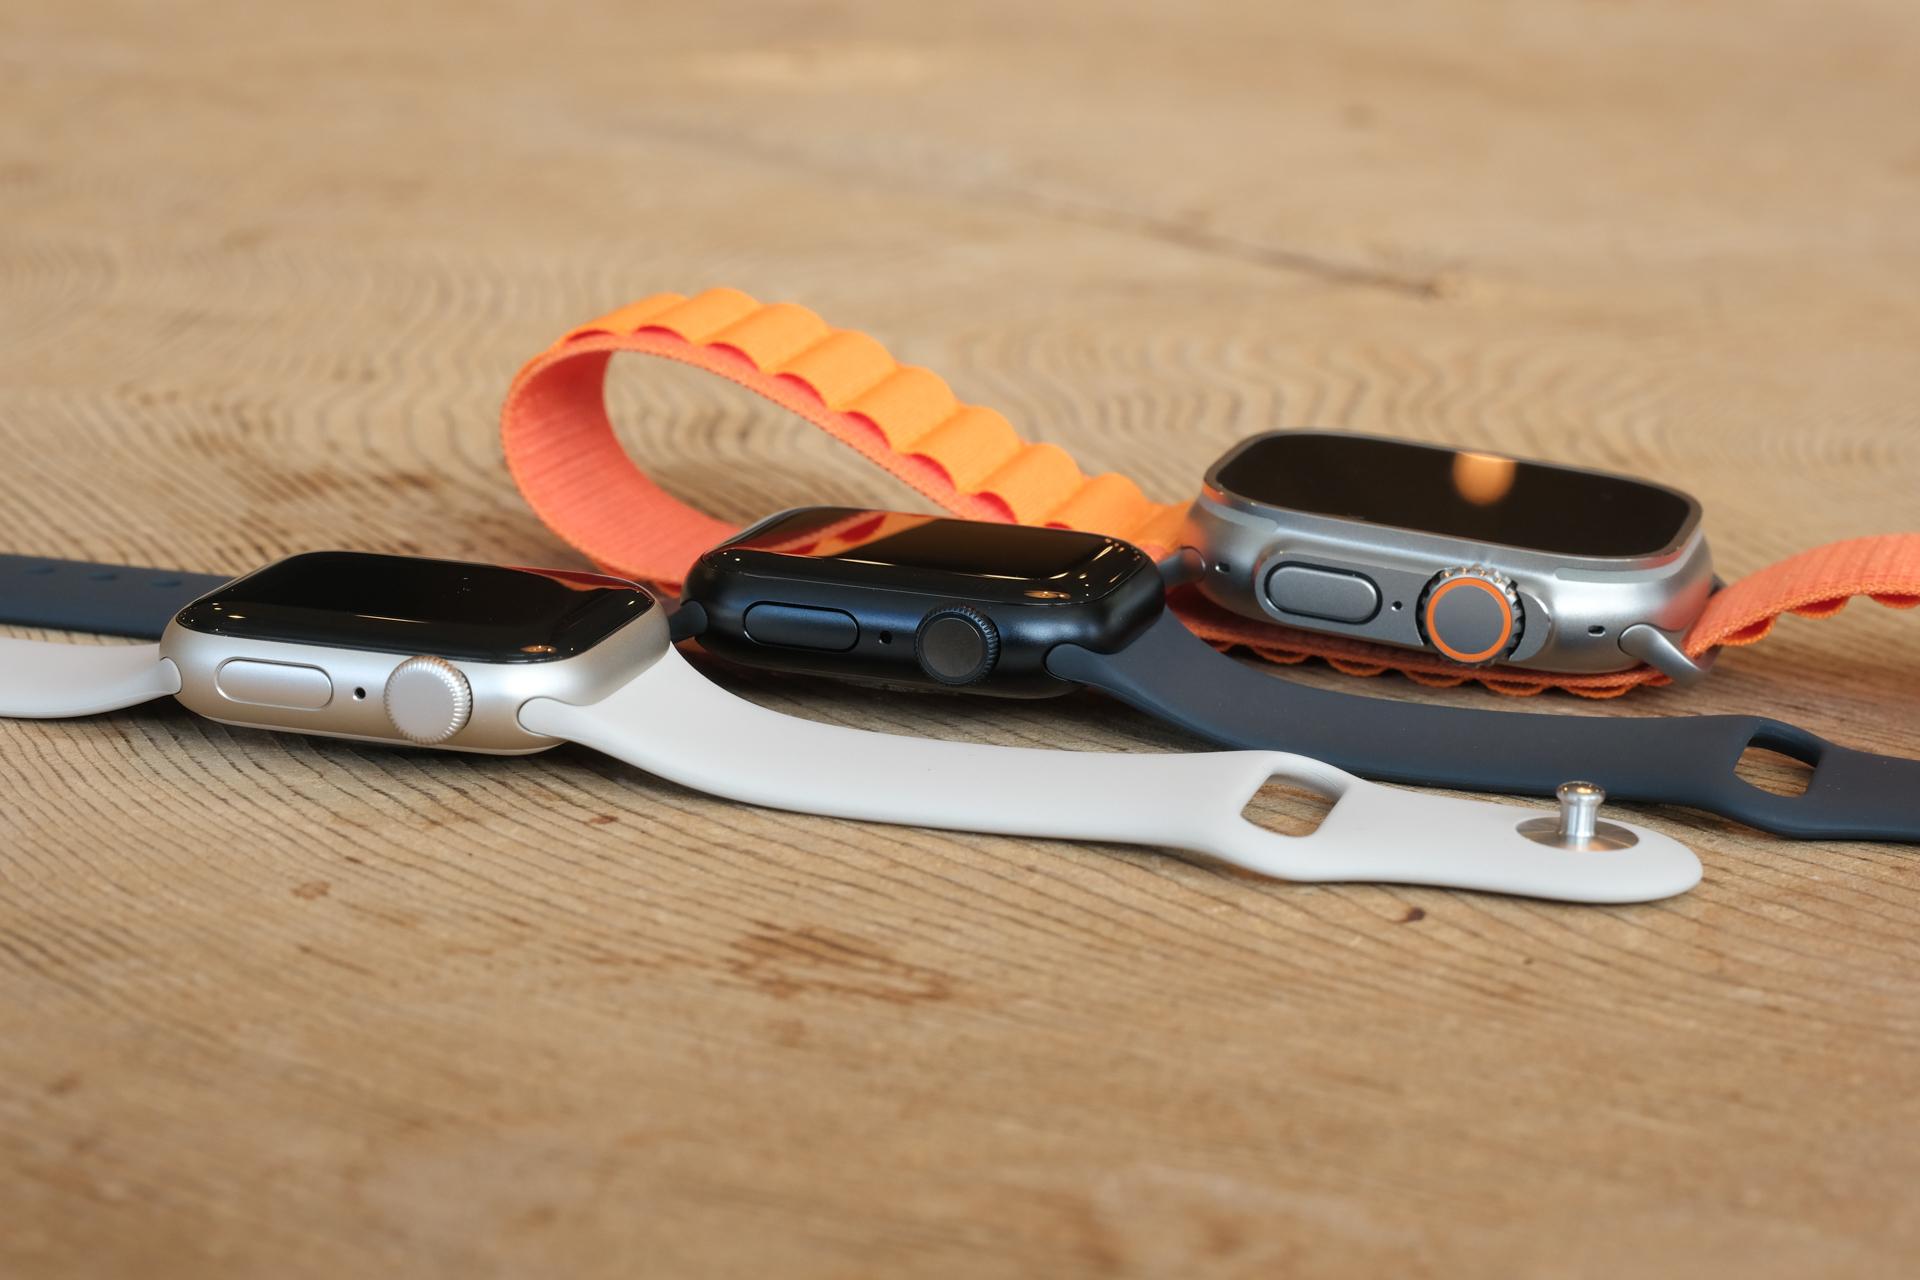 Series 8・SE2・Ultra、今年のApple Watchは3モデル。外観のちがいを